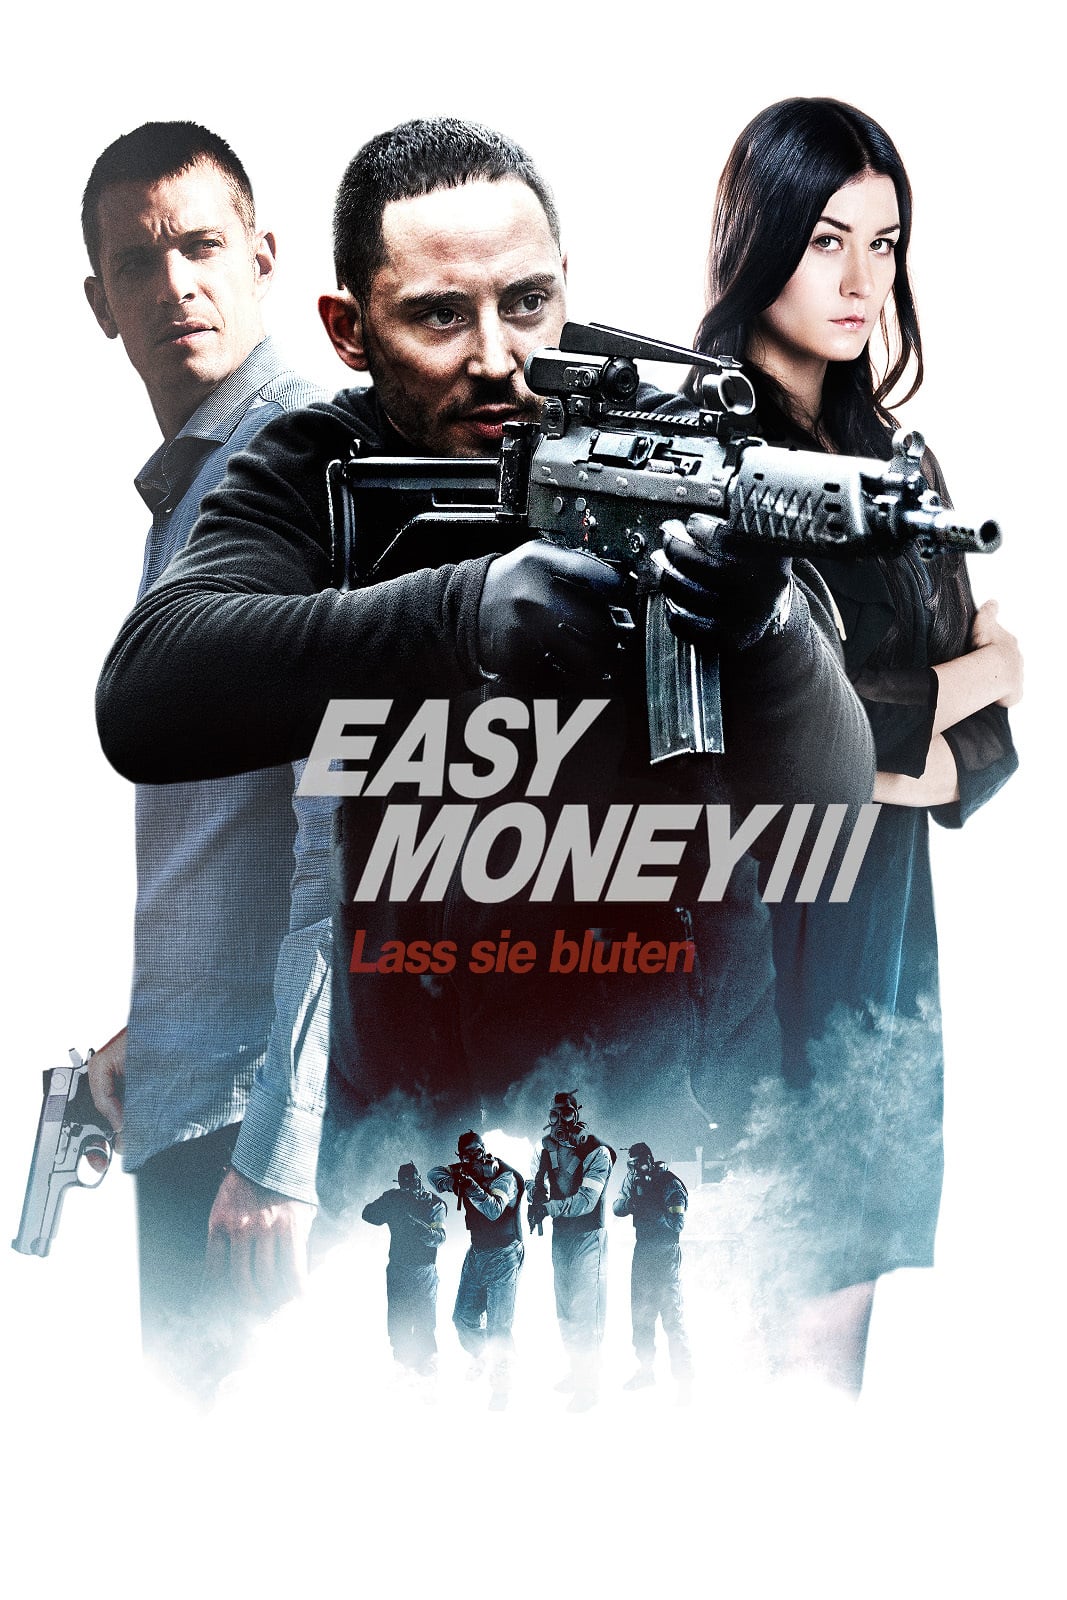 Plakat von "Easy Money III"